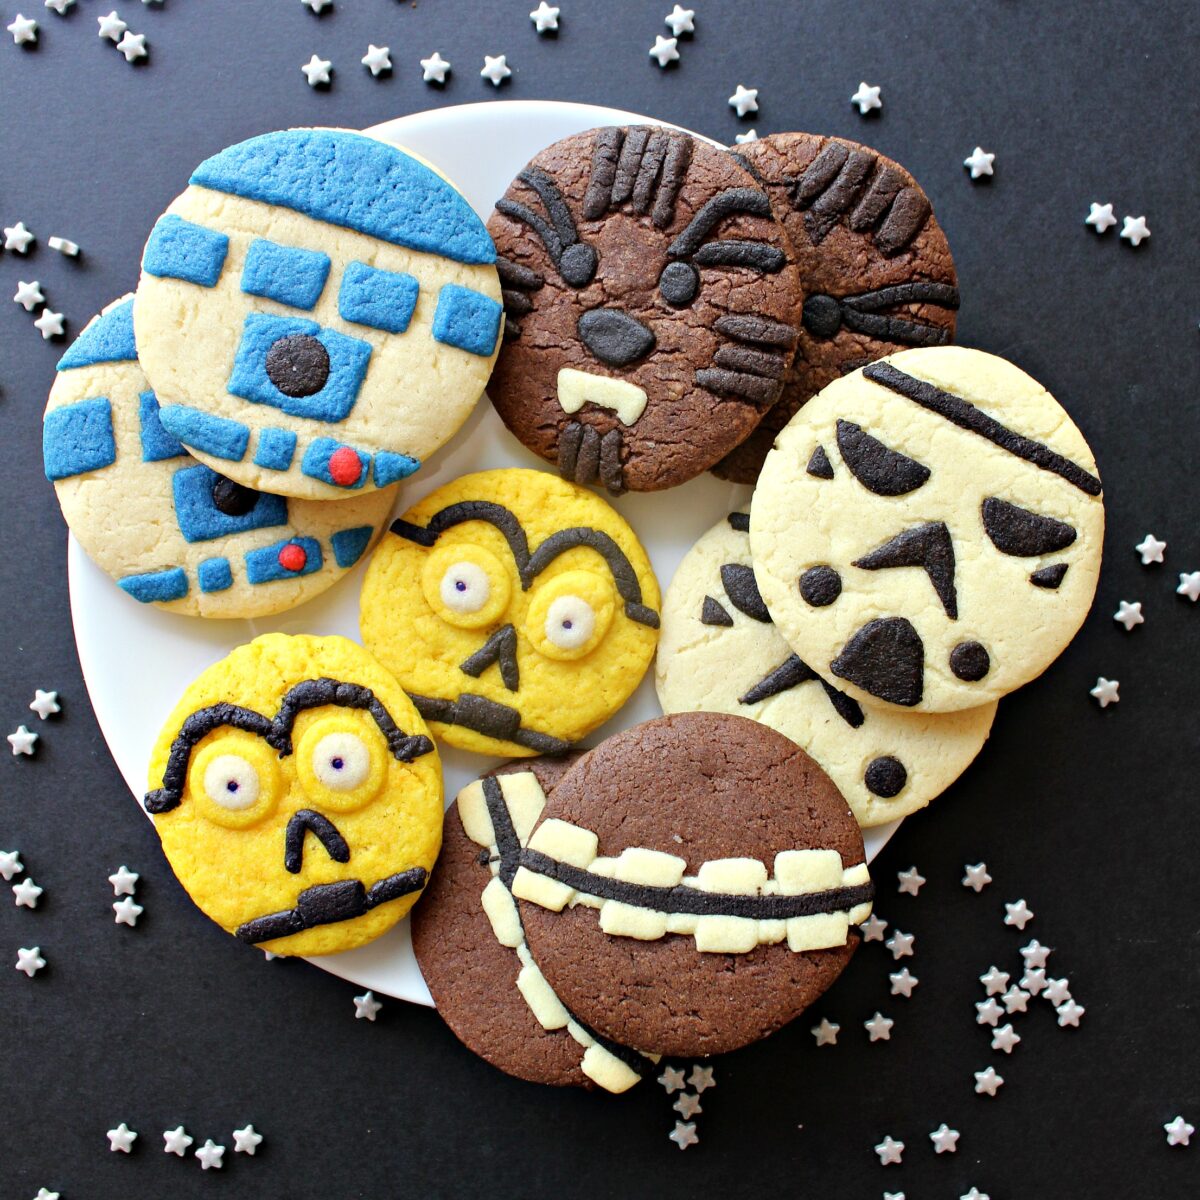 Plate of Star Wars Sugar Cookies.